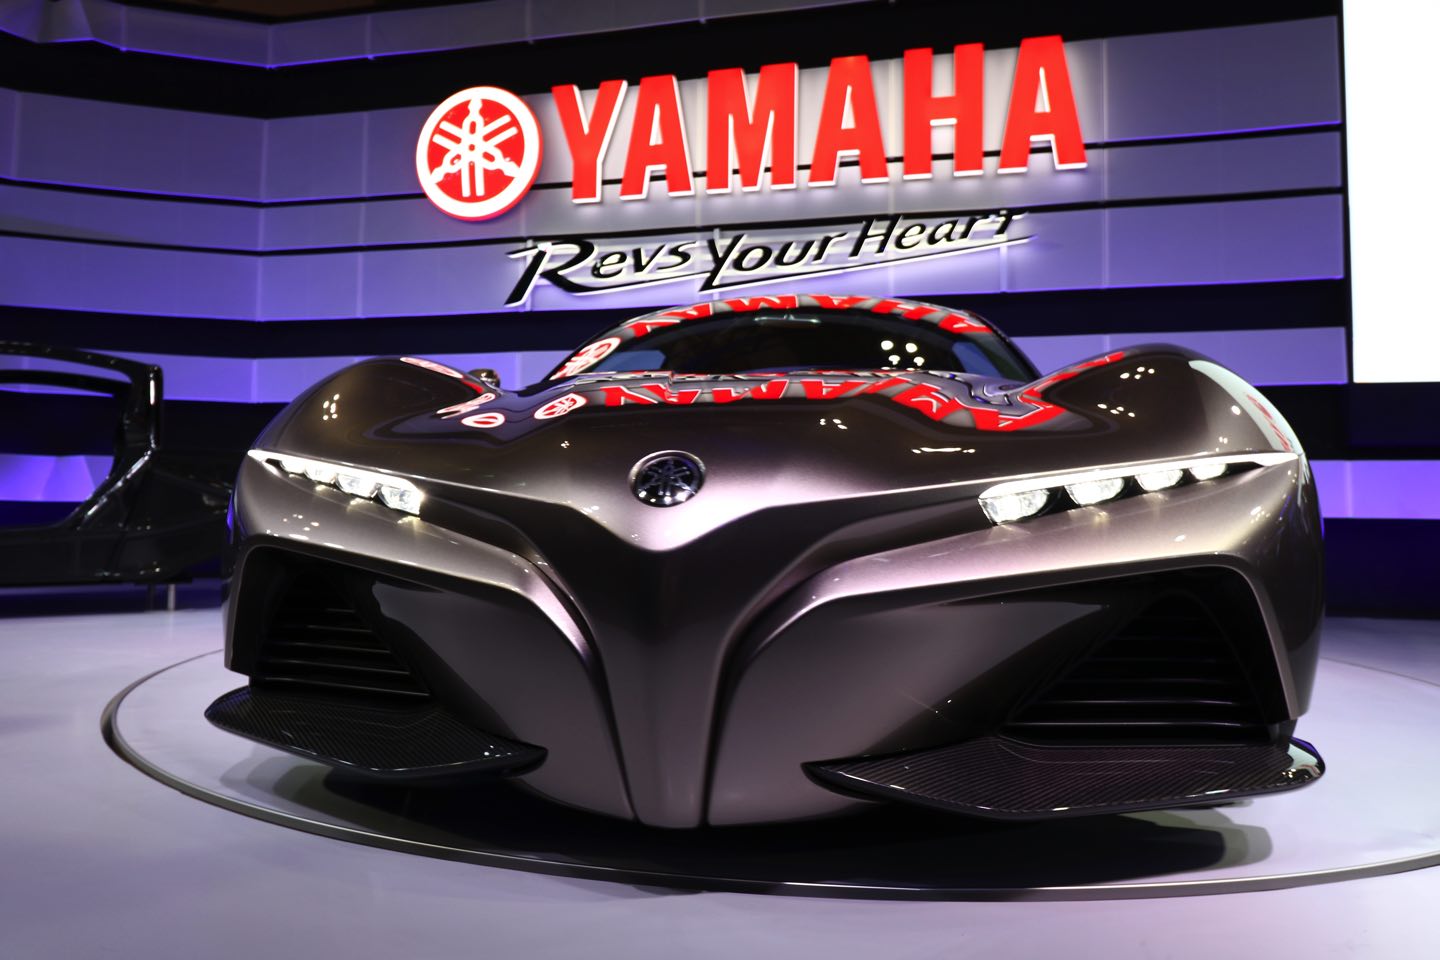 Yamaha2